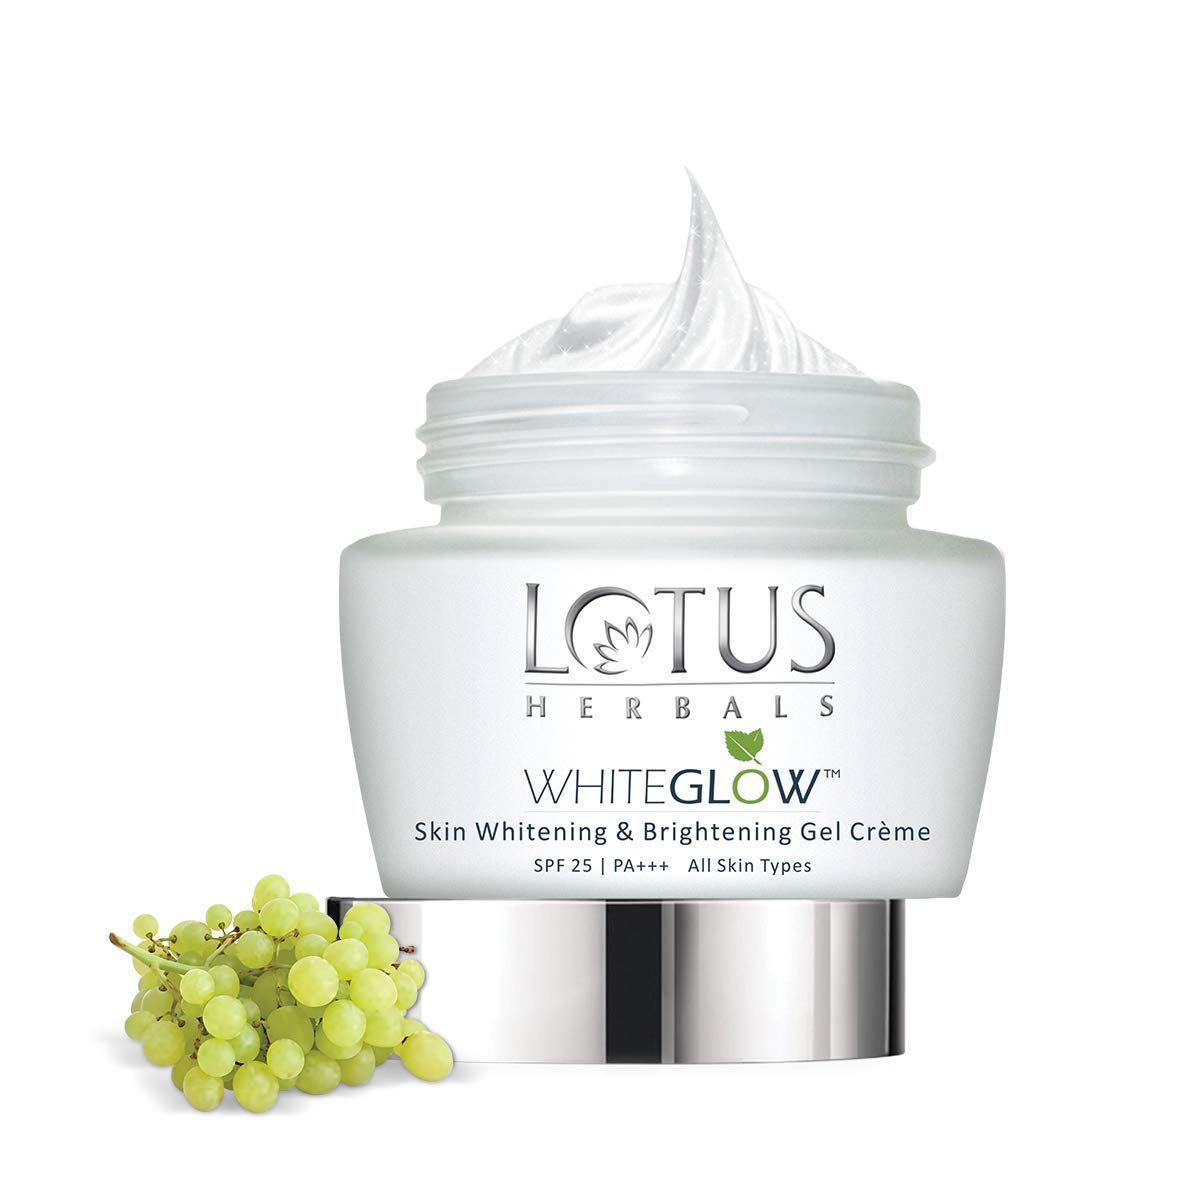 Lotus Herbals Whiteglow Skin Whitening & Brightening Gel Cream SPF 25 Pa +++